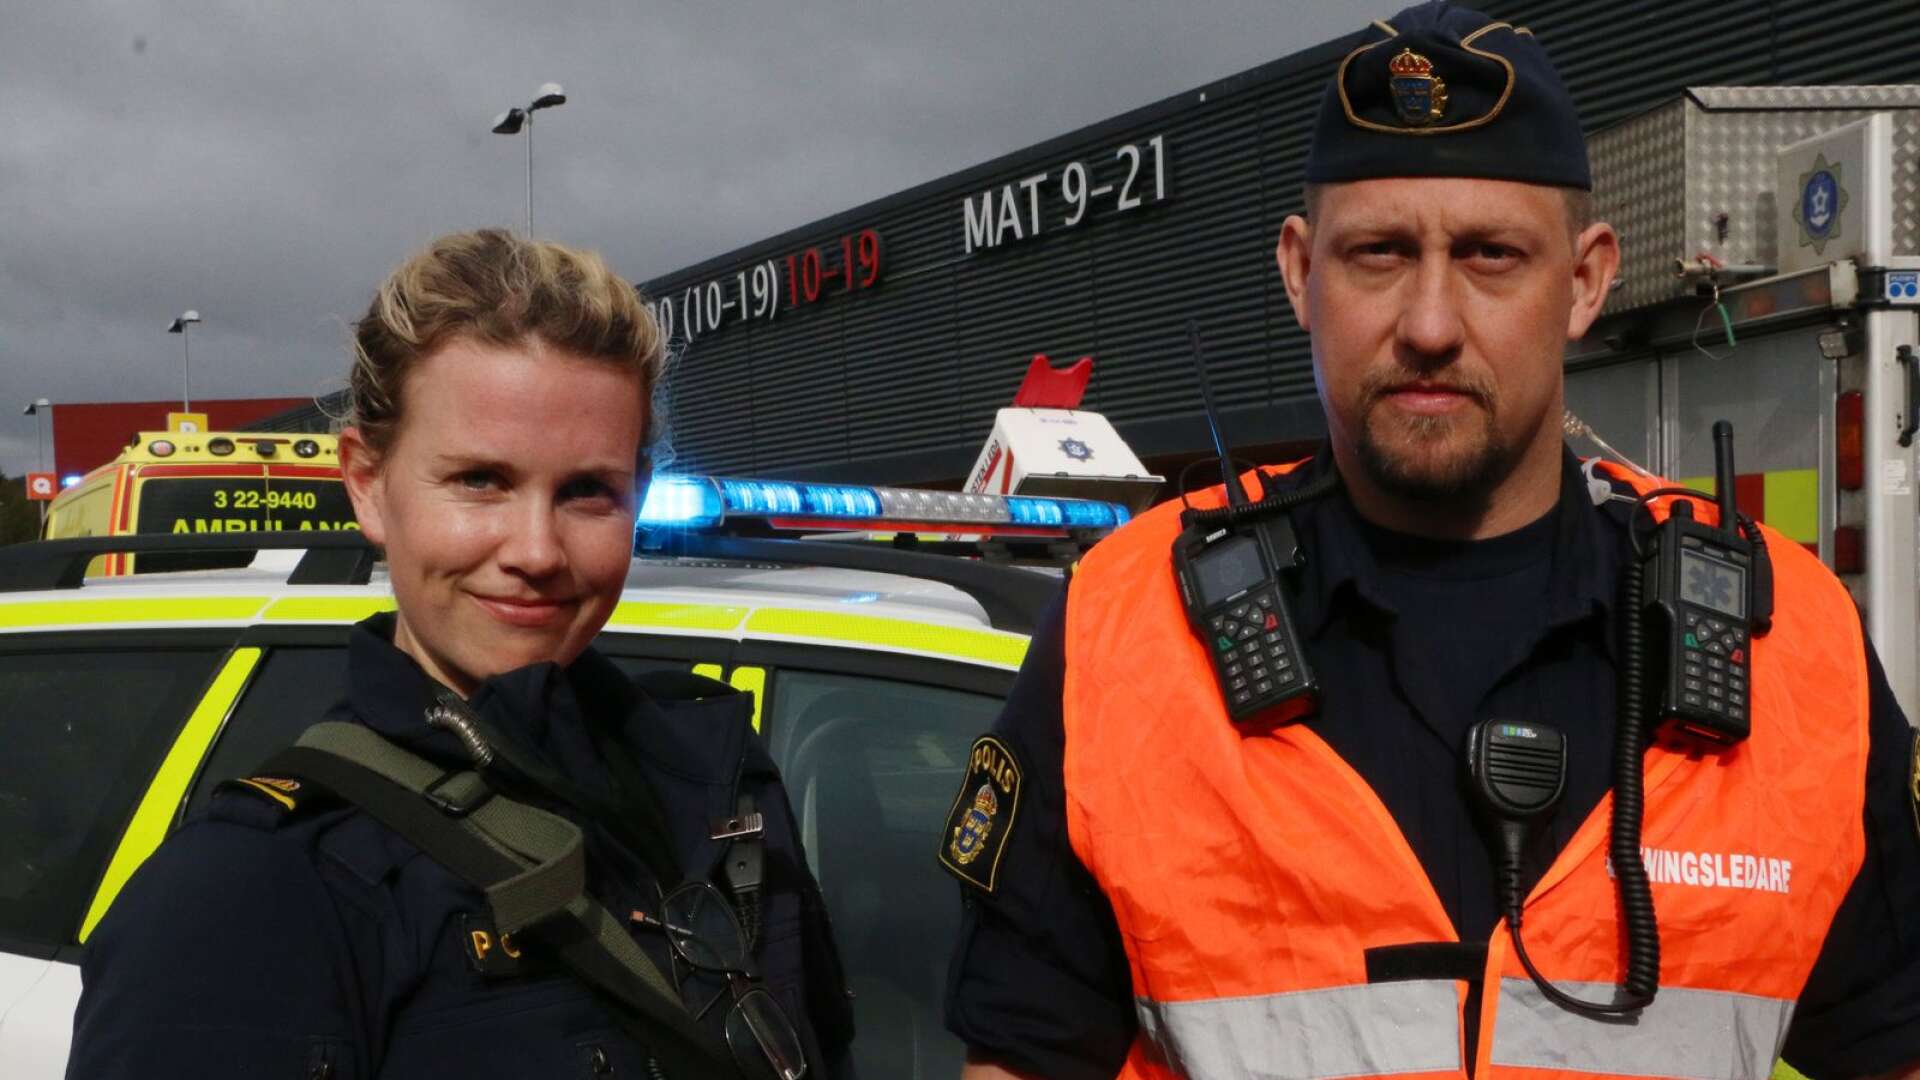 Polisassistent Elin Billing och övningsledare Joakim Kristiansen.